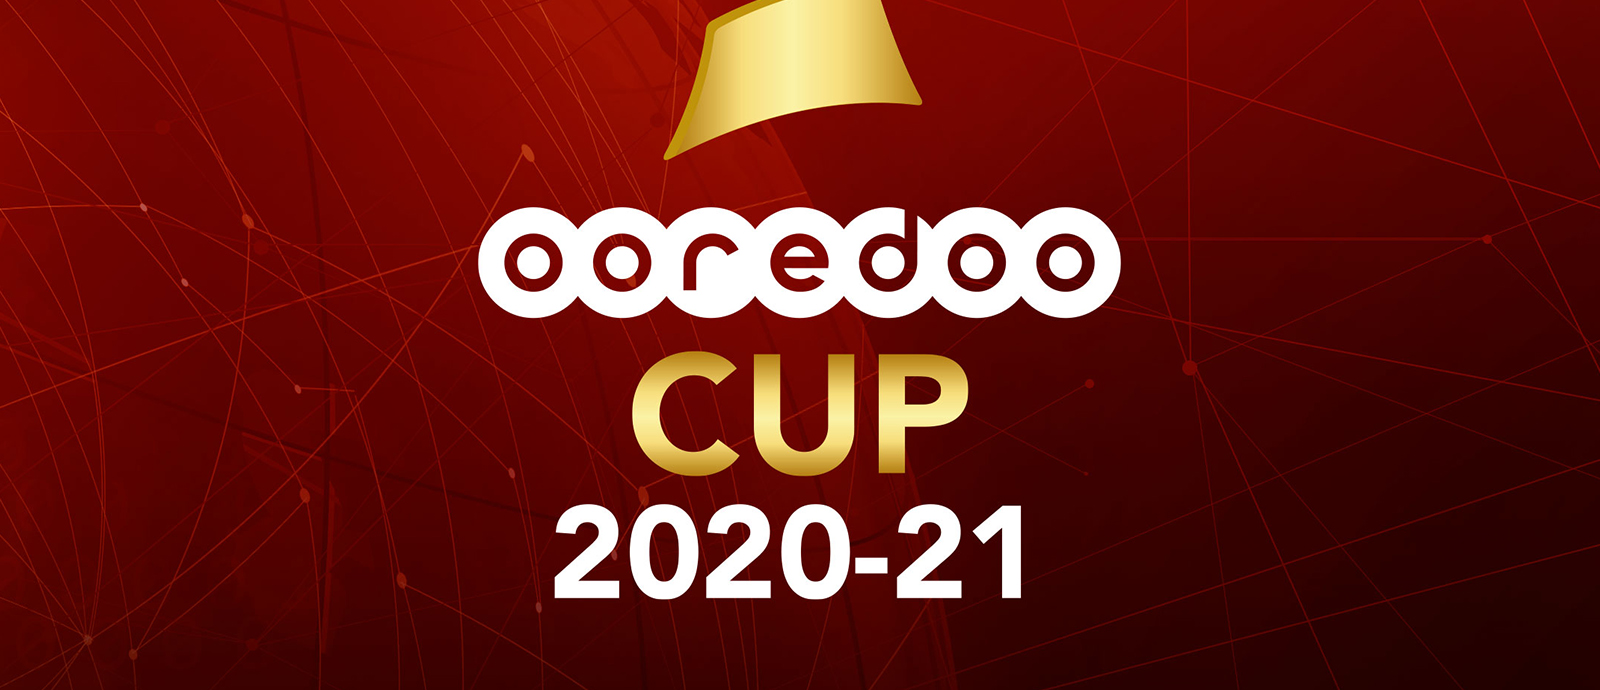 Ooredoo Cup Logo